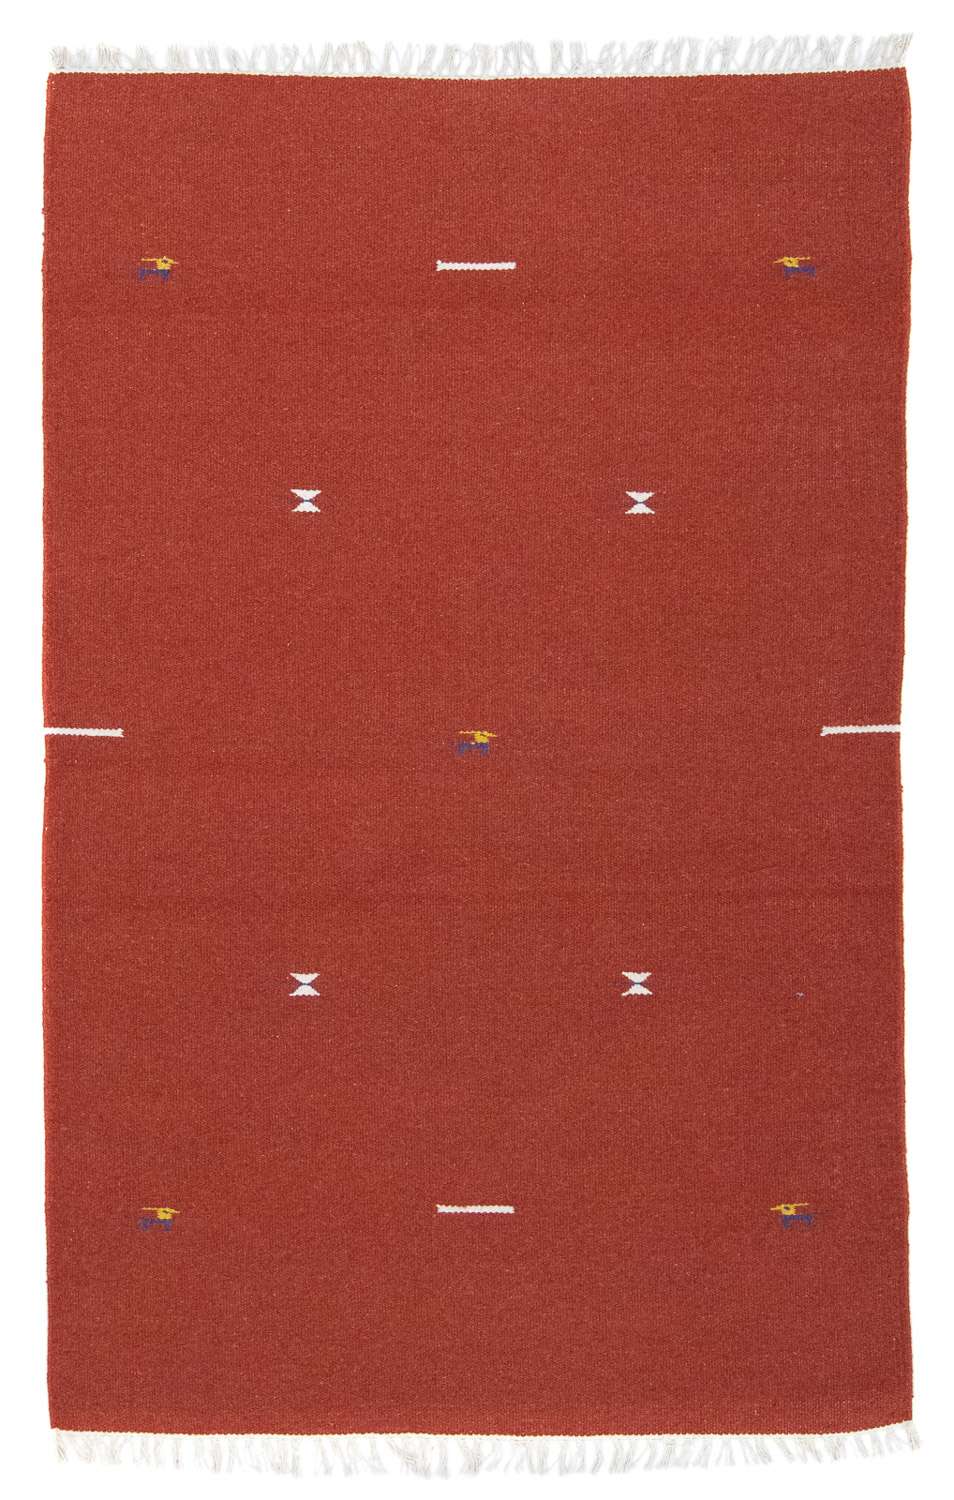 Tappeto Kelim - Tendenza - 180 x 120 cm - rosso